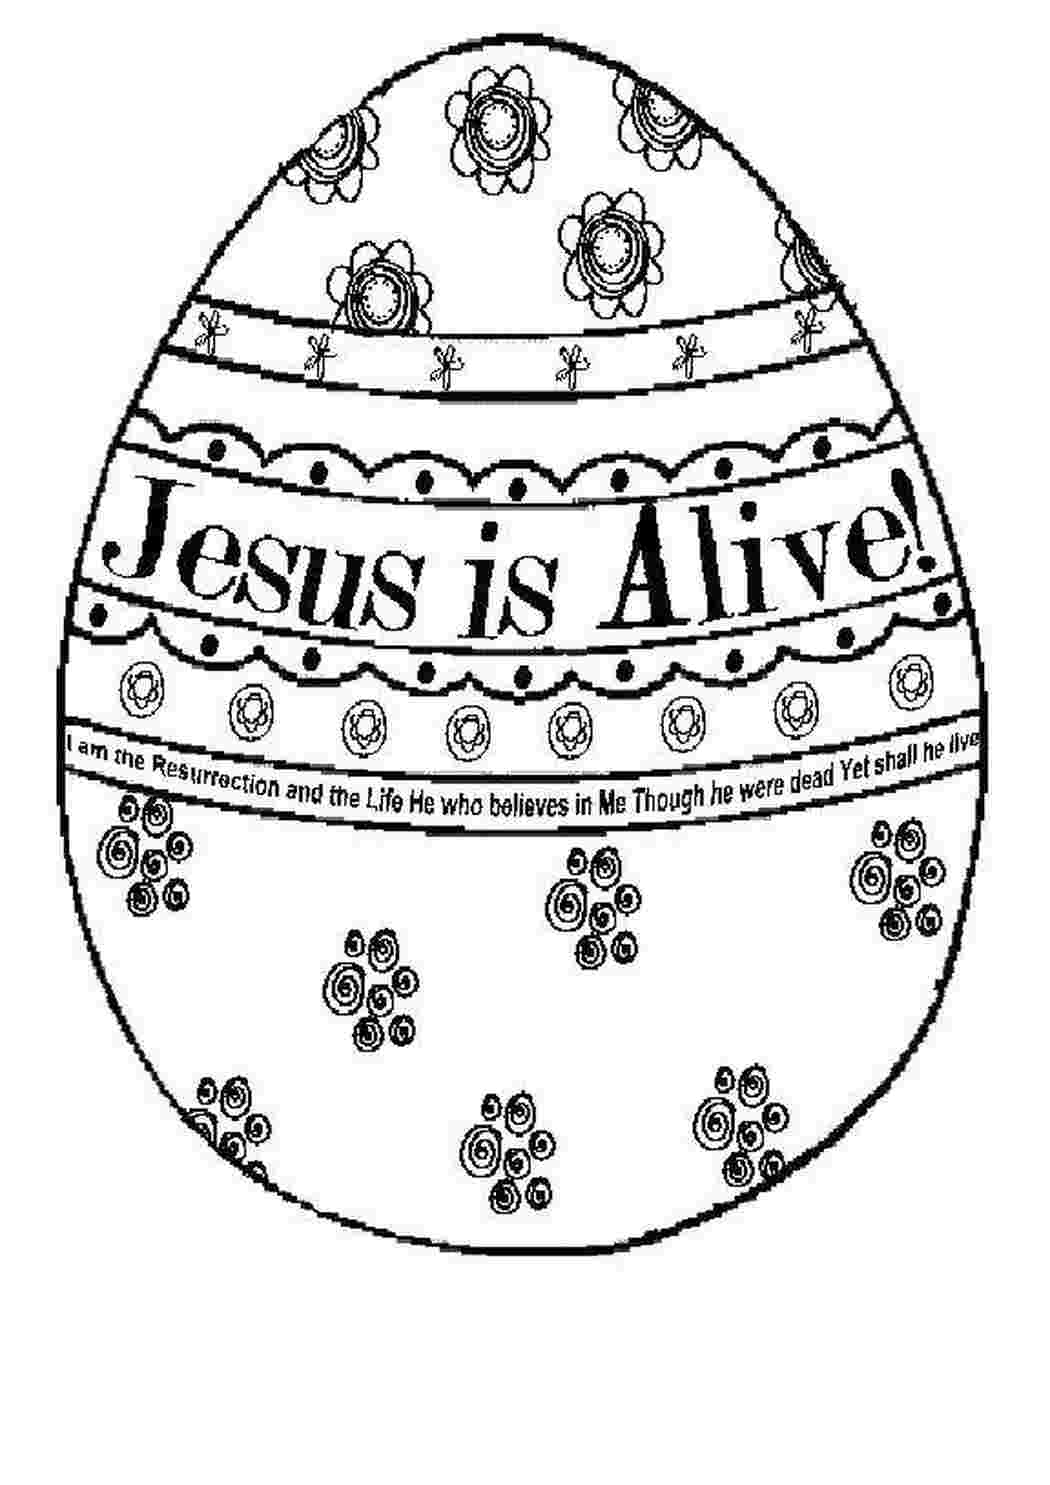 Раскраска Пасха яйца и крестом